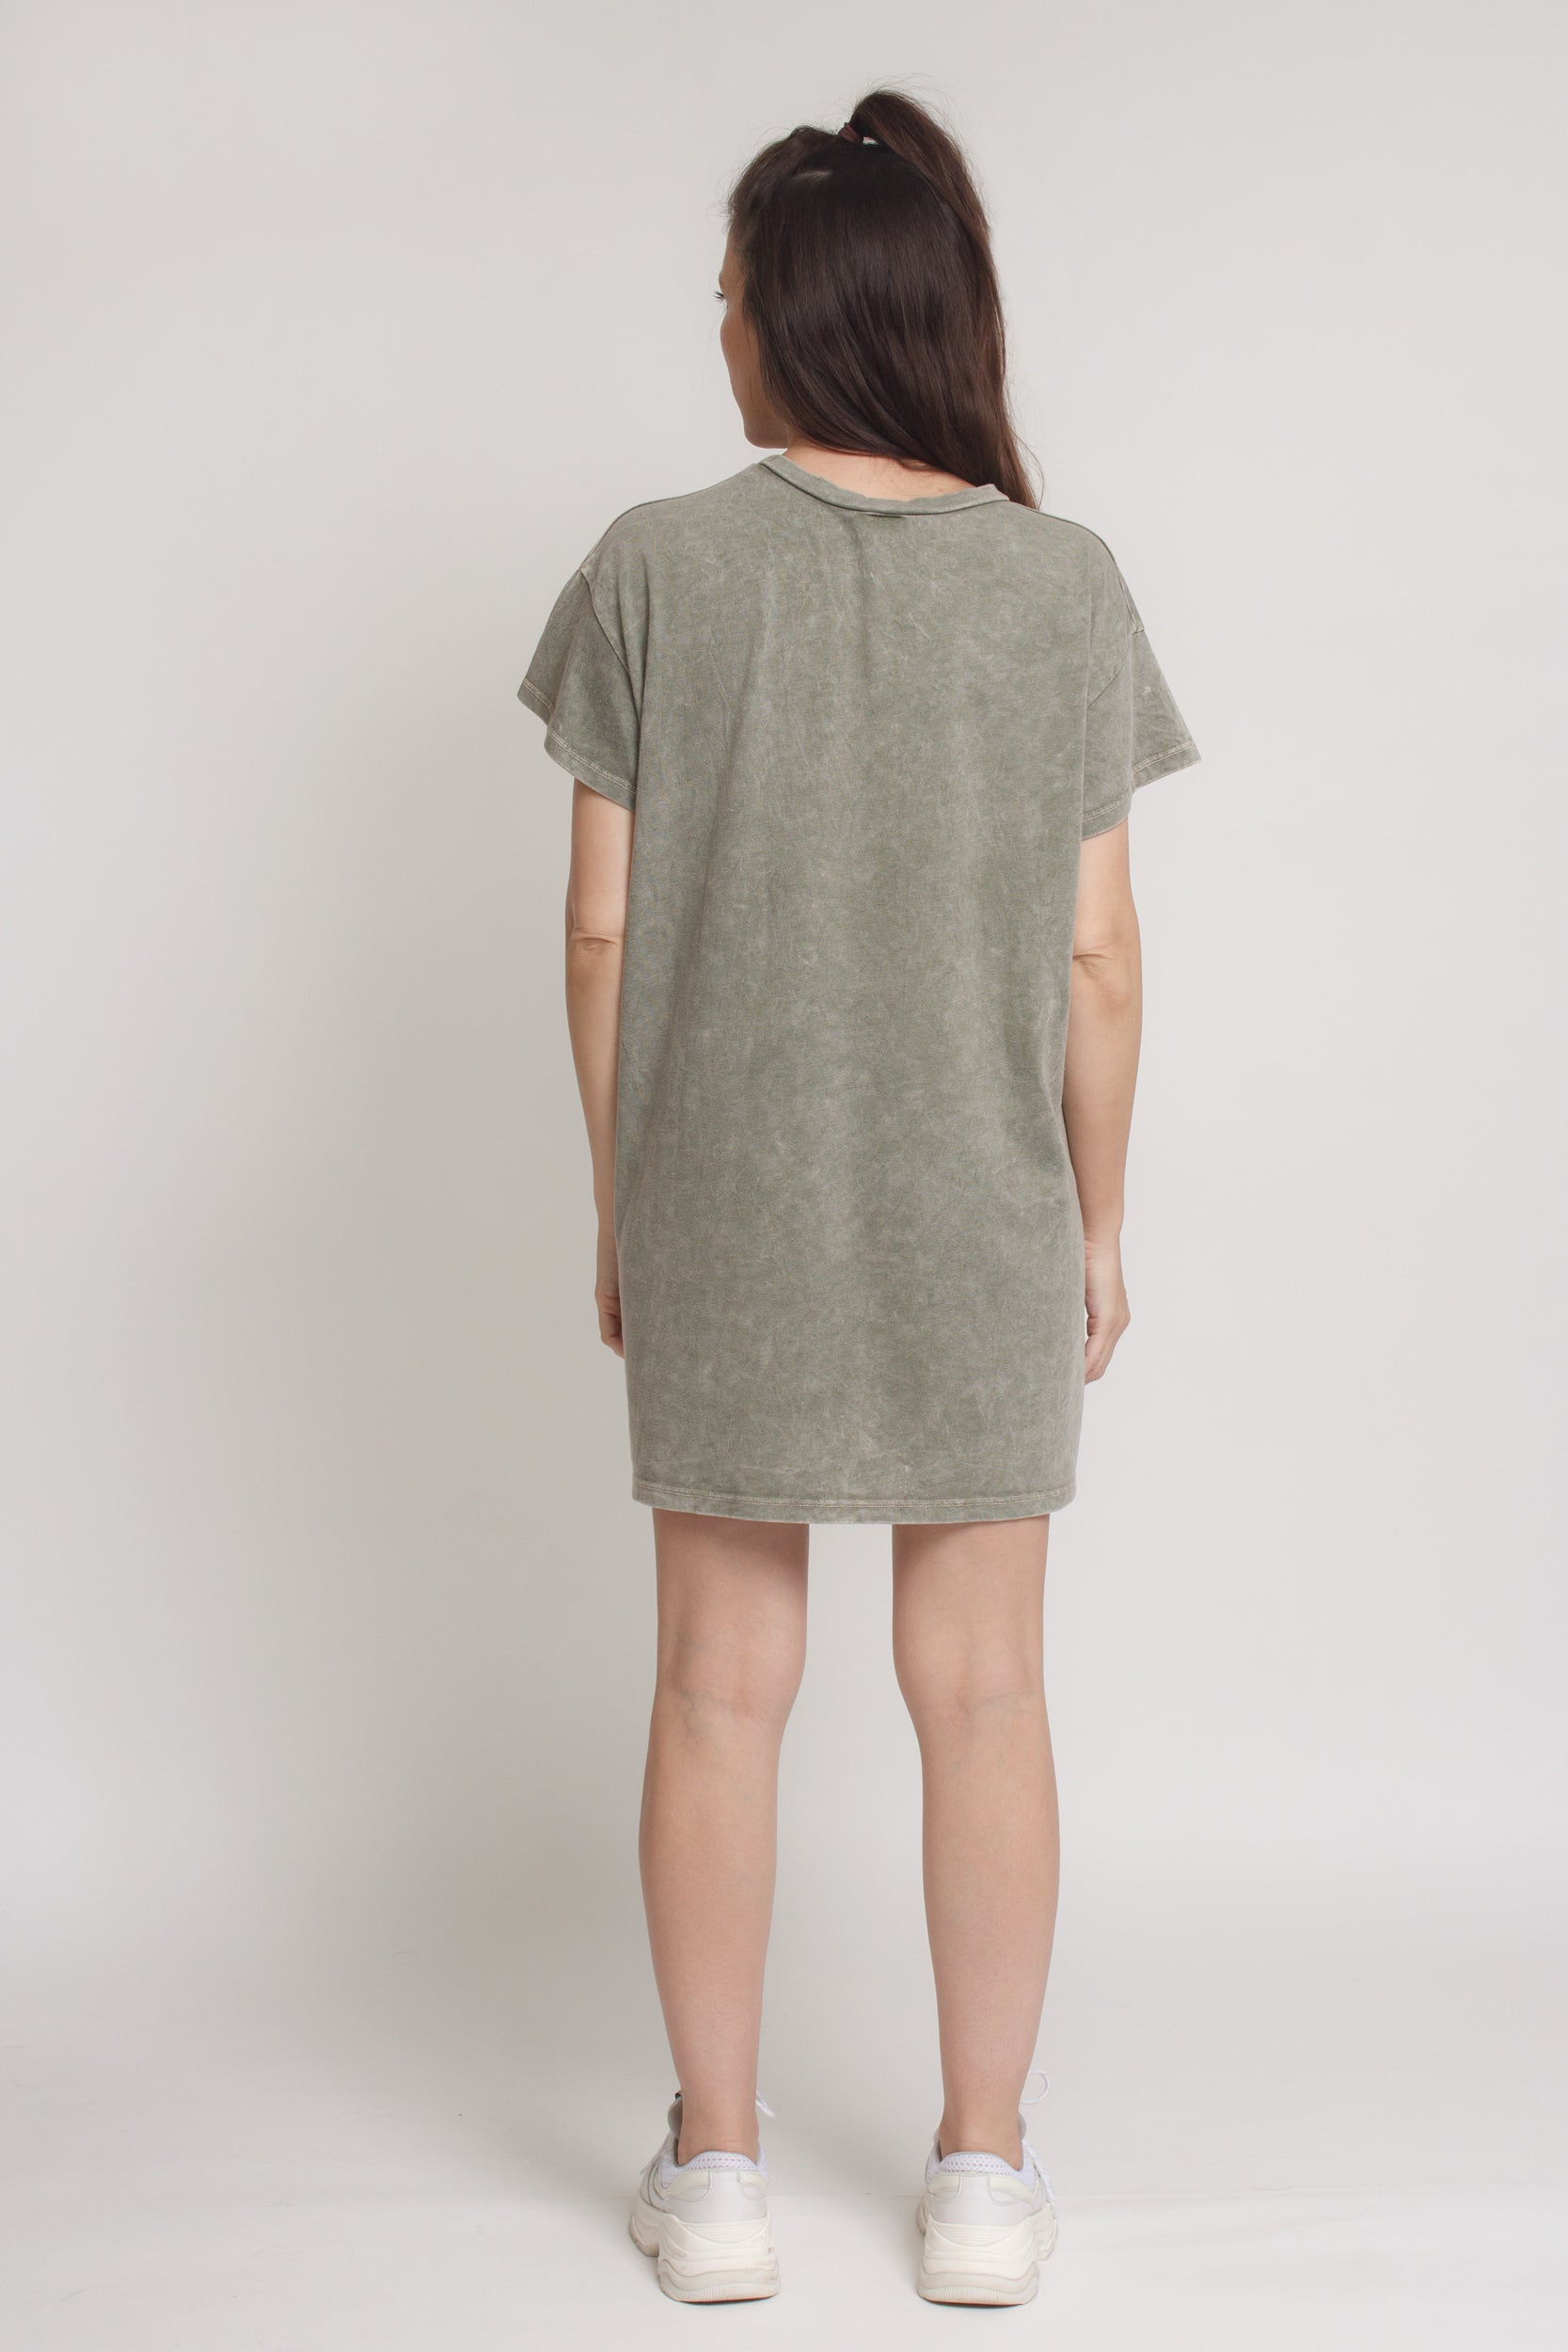 Oversized Pocket tee shirt dress, in vintage olive. Image 13